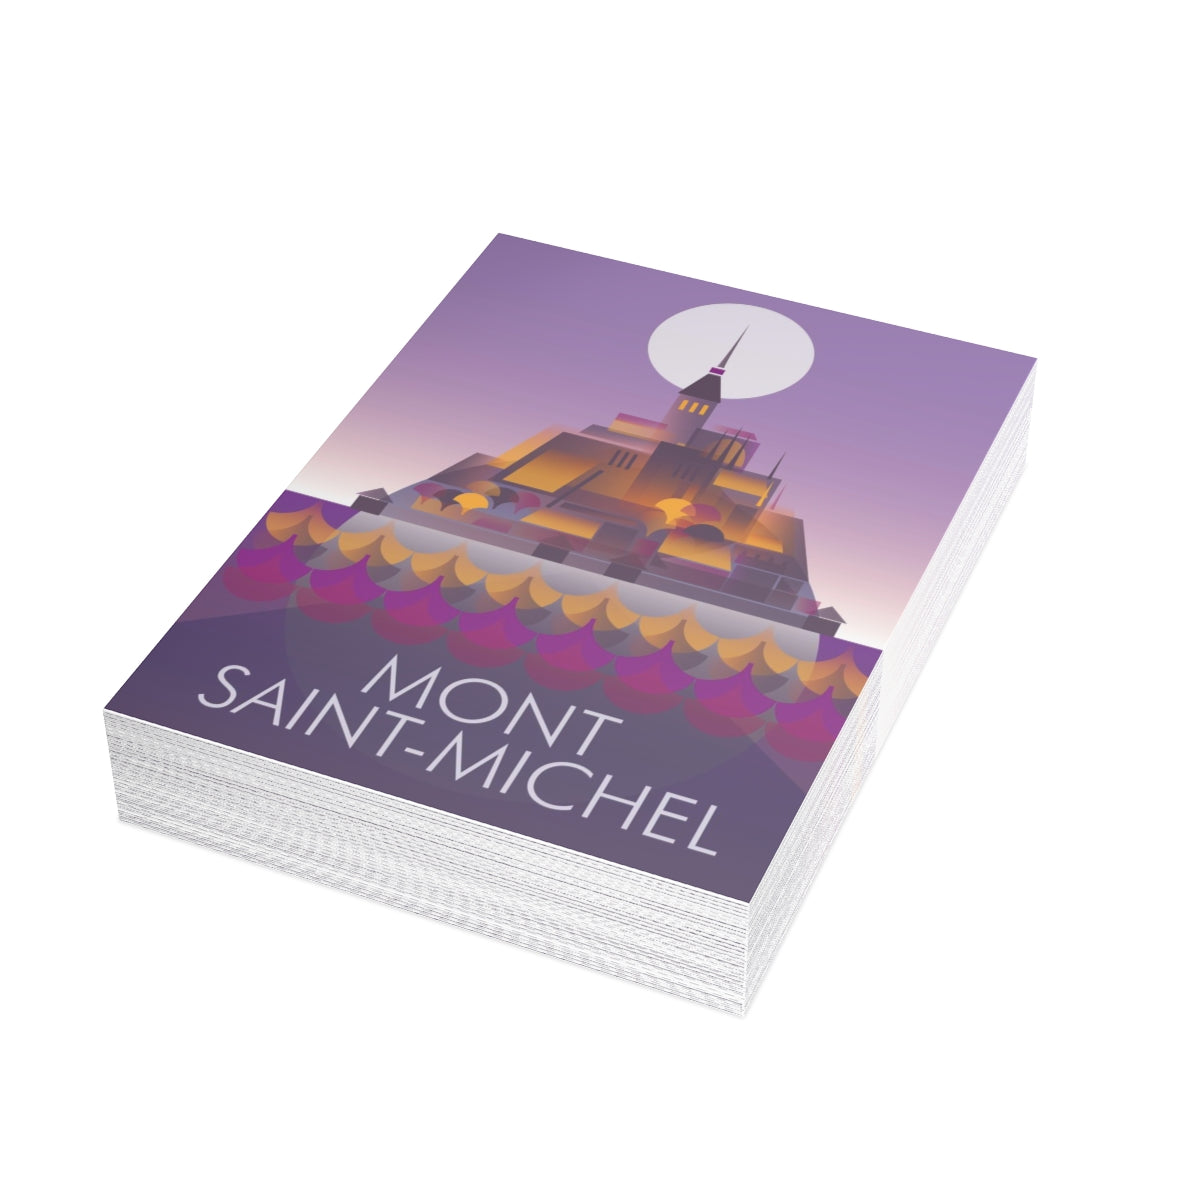 Mont Saint-Michel gefaltete Notizkarten + Umschläge (10 Stück)